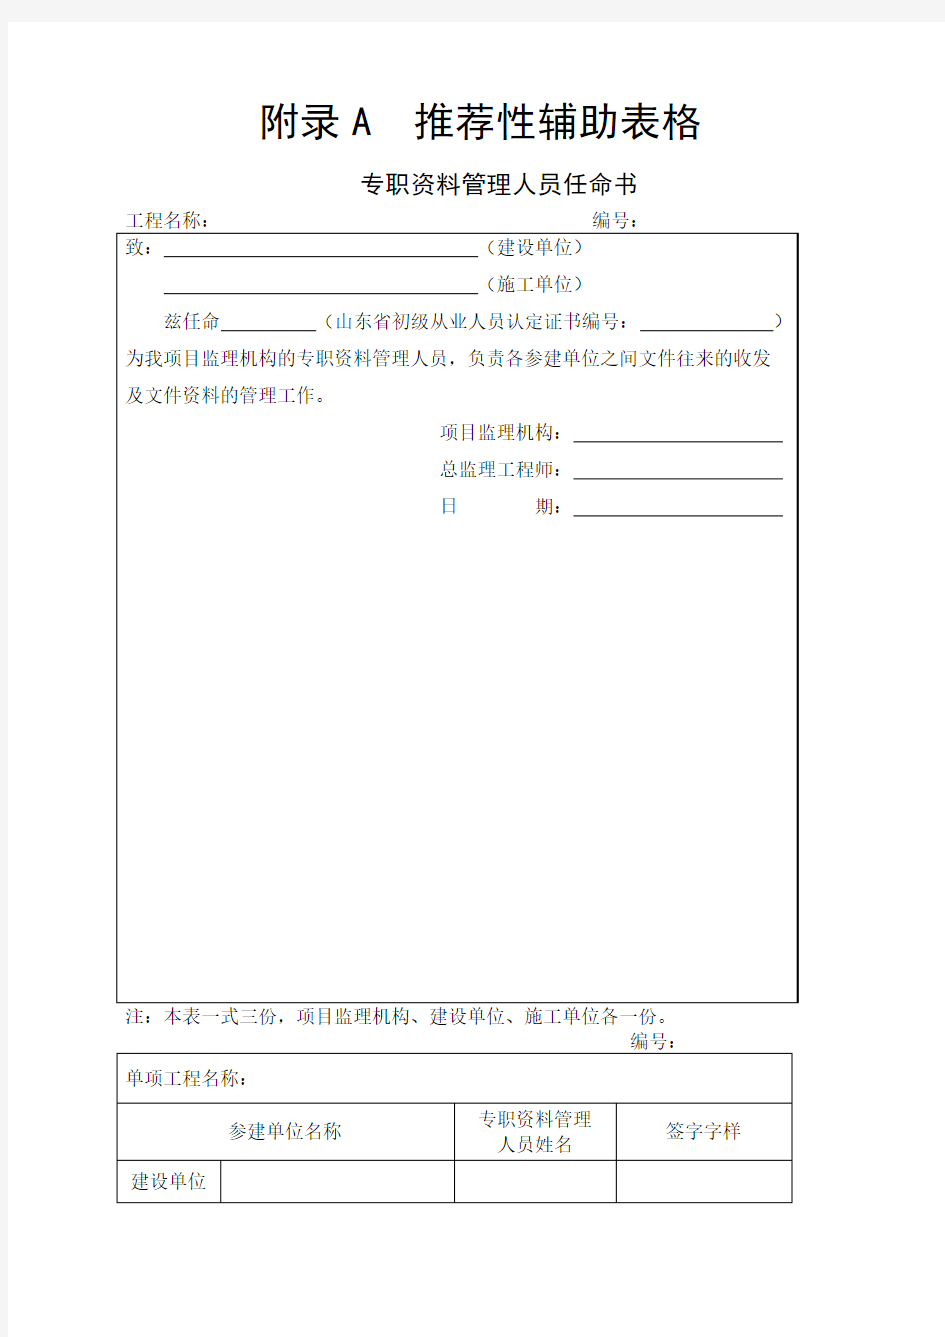 山东省建设工程监理文件管理规程全套表格